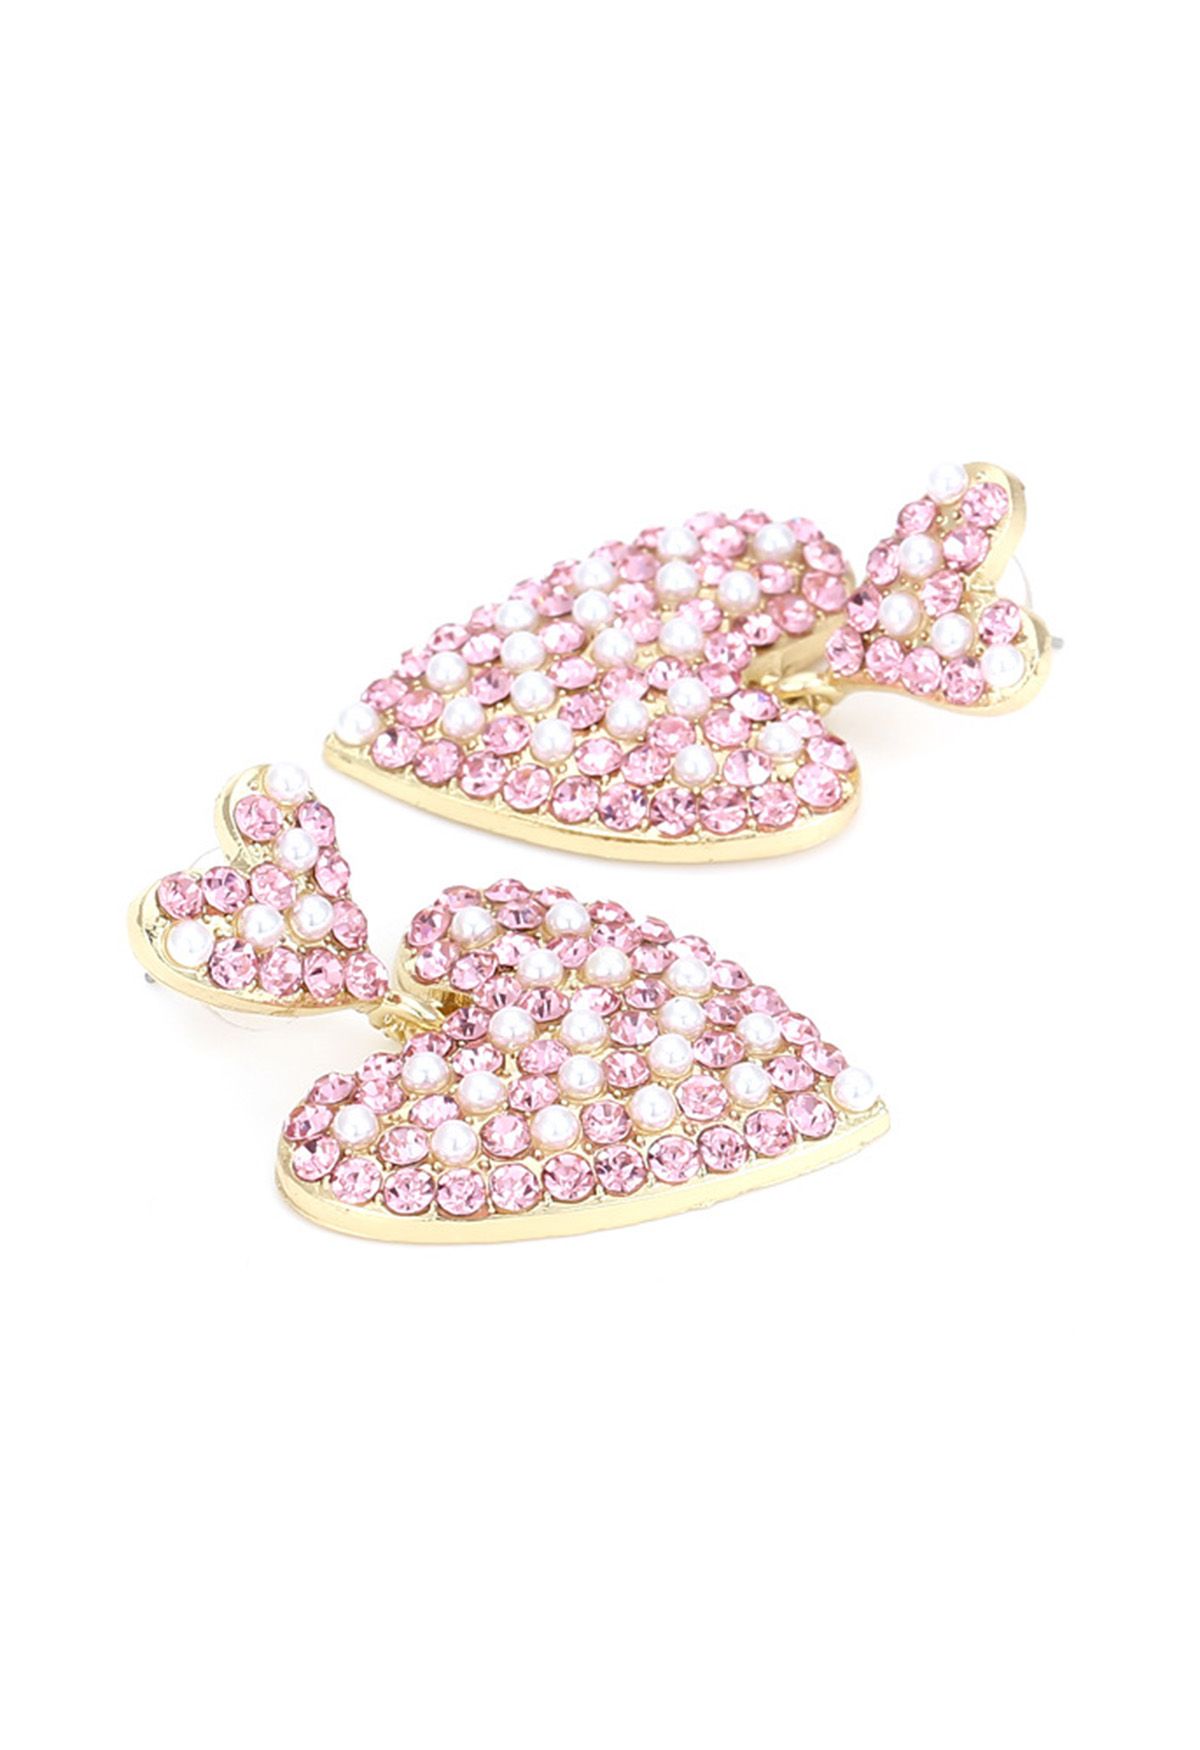 Lovely Pearl Heart Rhinestone Earrings